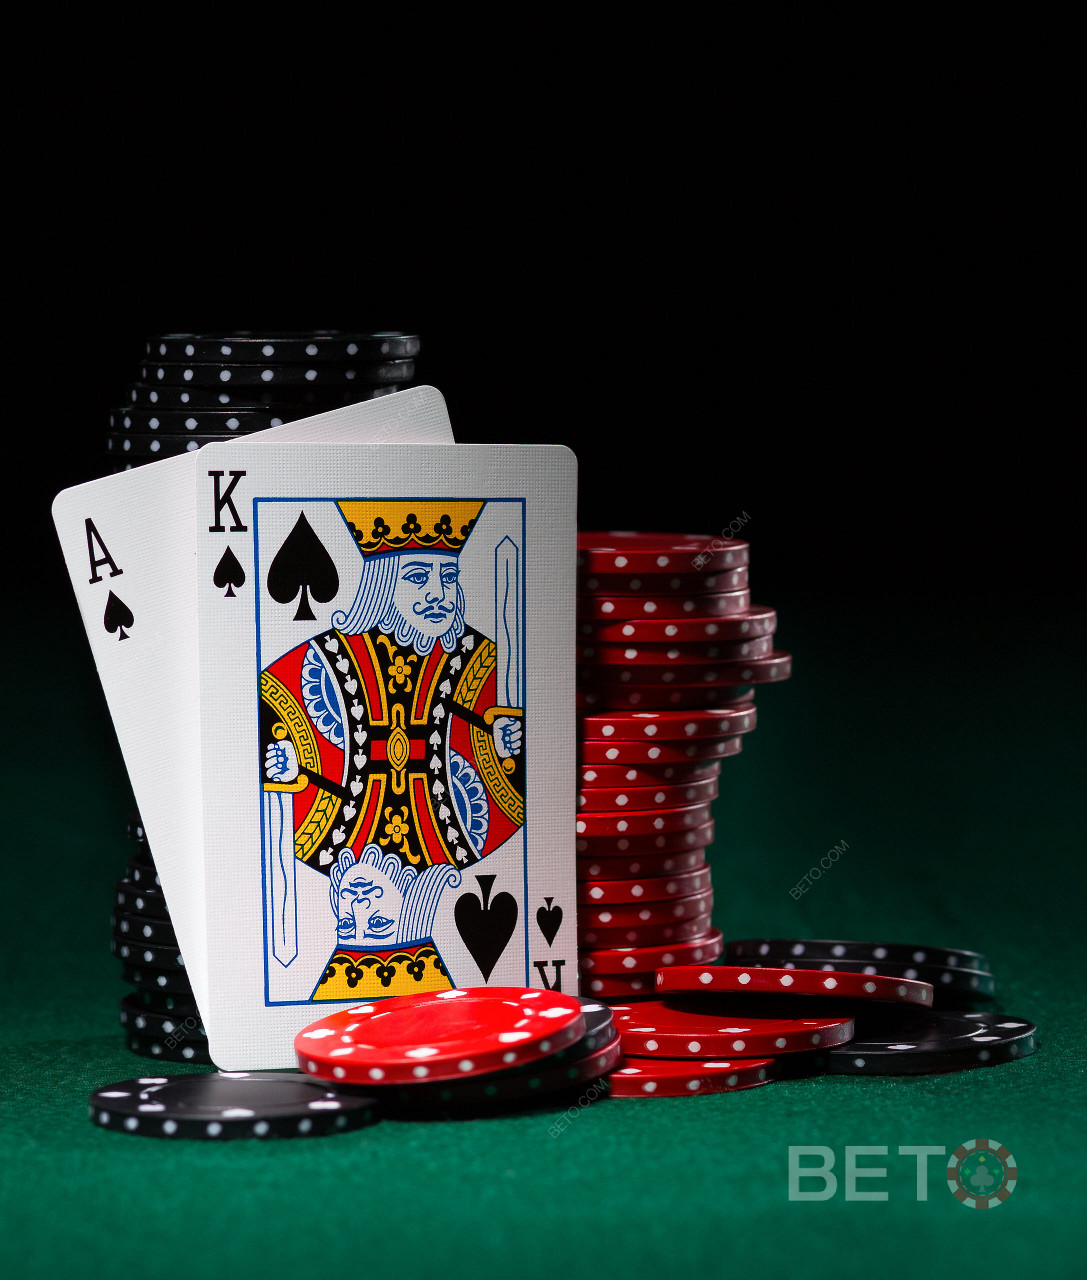 Video-Poker-Spiele und Kartenspiele ist auch avaible bei BitStarz.